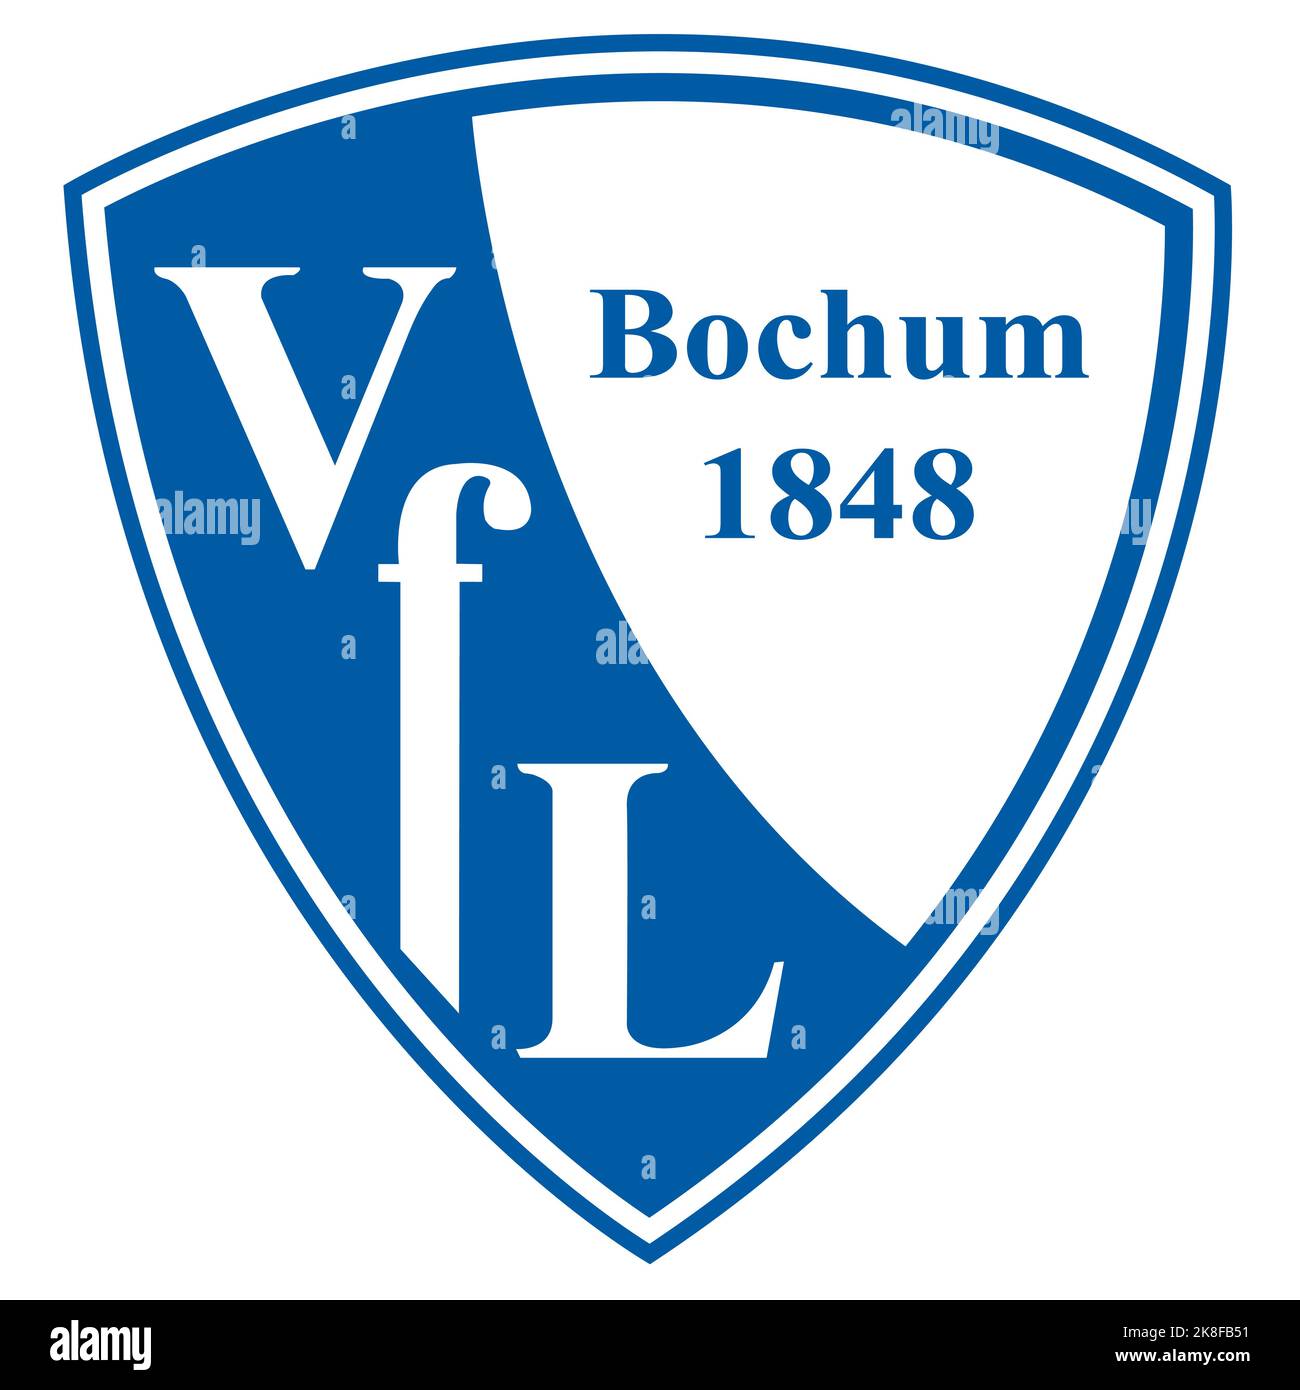 Francoforte sul meno, Germania - 10.23.2022 il logo della squadra di calcio tedesca Bochum. Immagine vettoriale Illustrazione Vettoriale